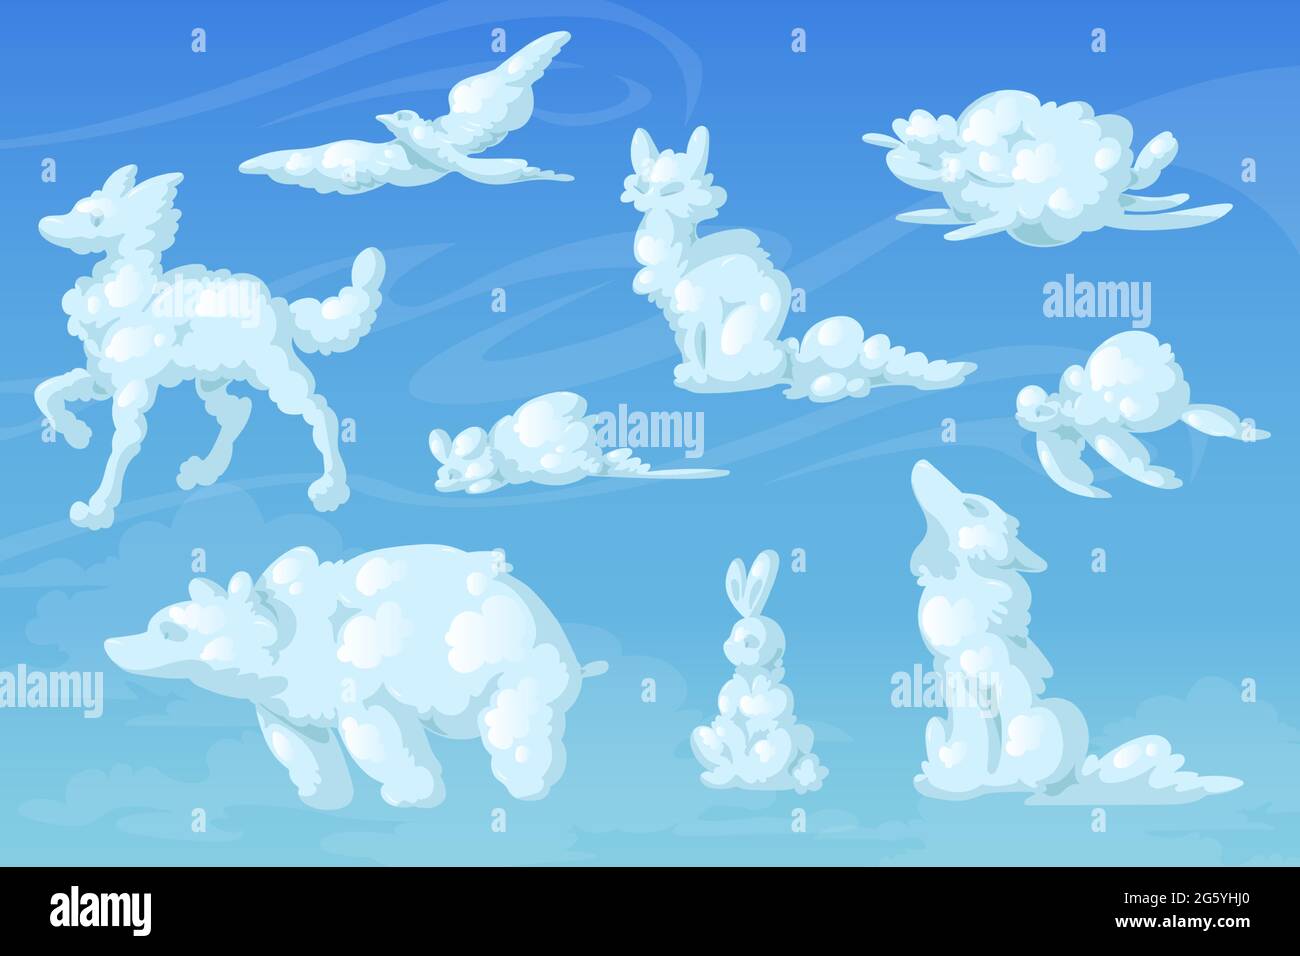 Nuvole bianche a forma di animali carini. Volpe, cane, orso, topolino, tartaruga, silhouette di lupo, uccello e coniglio sullo sfondo del cielo blu. Vettore realistico soffici nuvole soffici sotto forma di animali divertenti Illustrazione Vettoriale